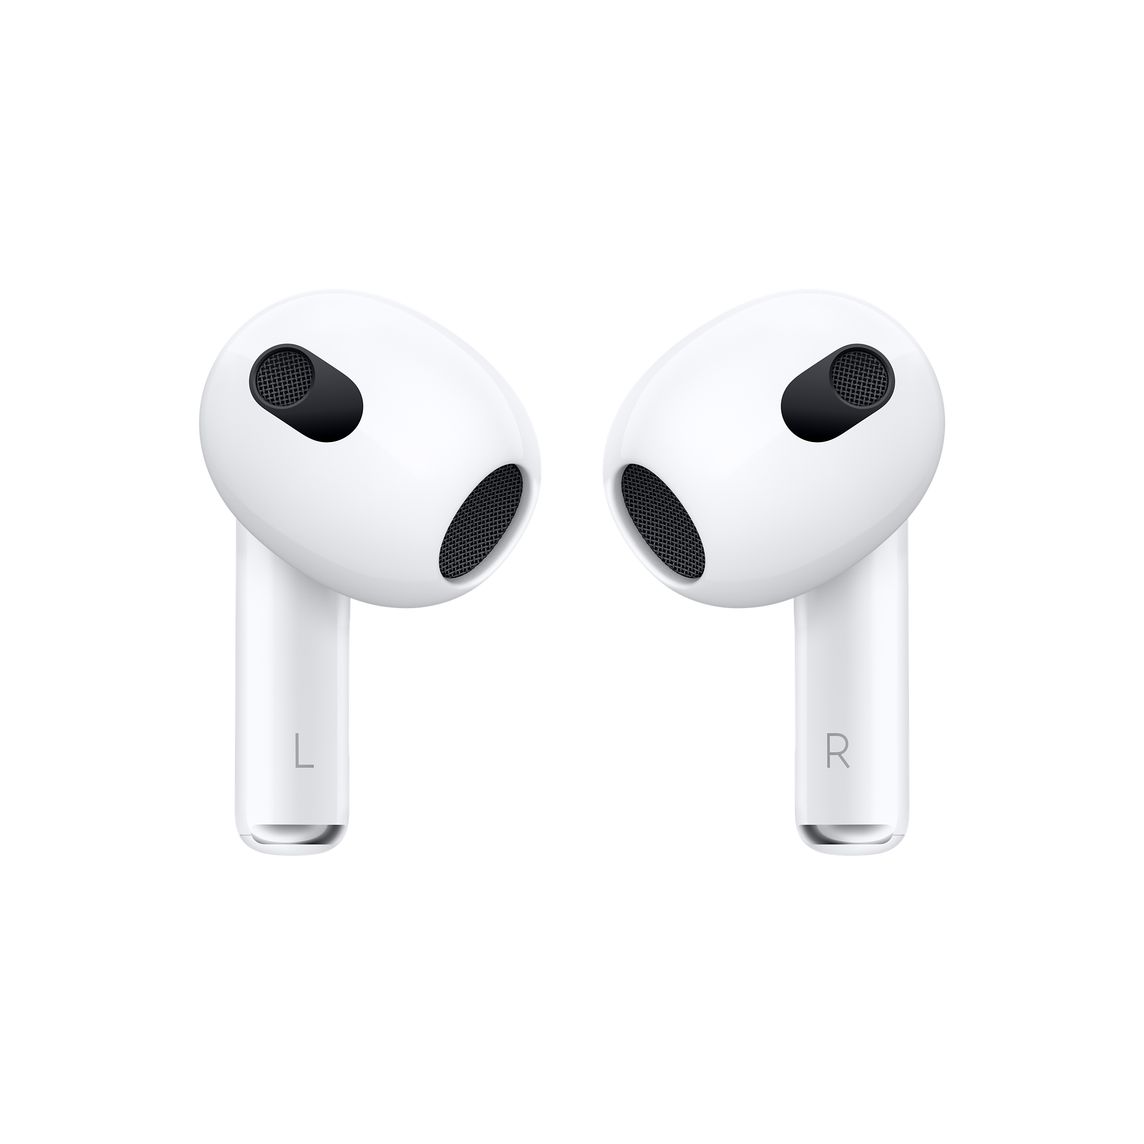 Apple earbuds, Apple Wiki